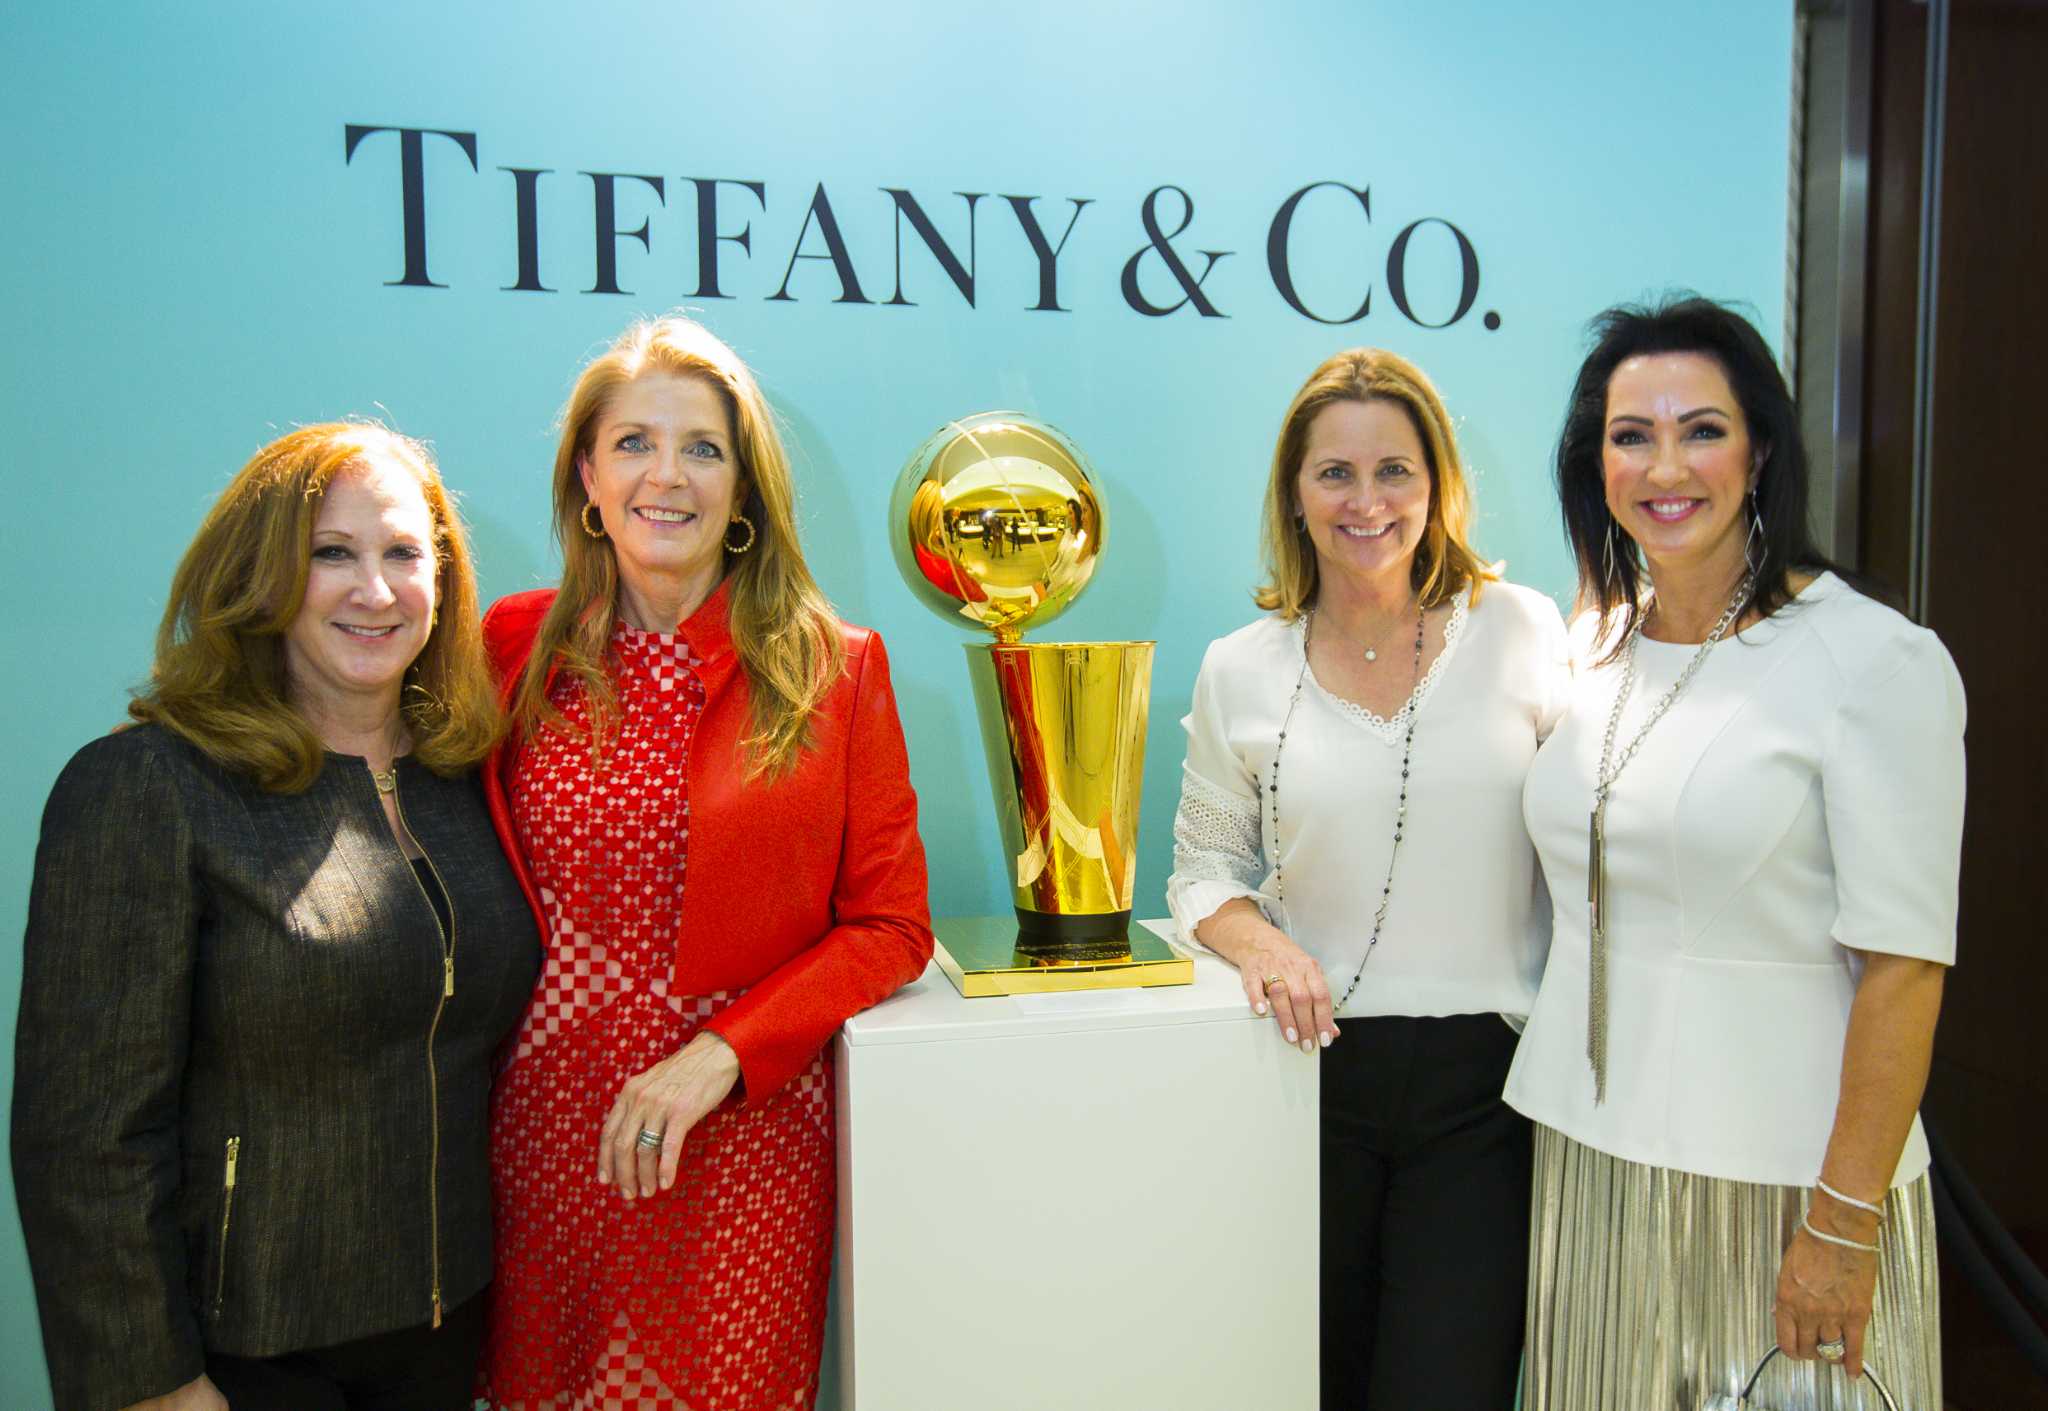 Tiffany & Co. - Tiffany has produced the Larry O'Brien